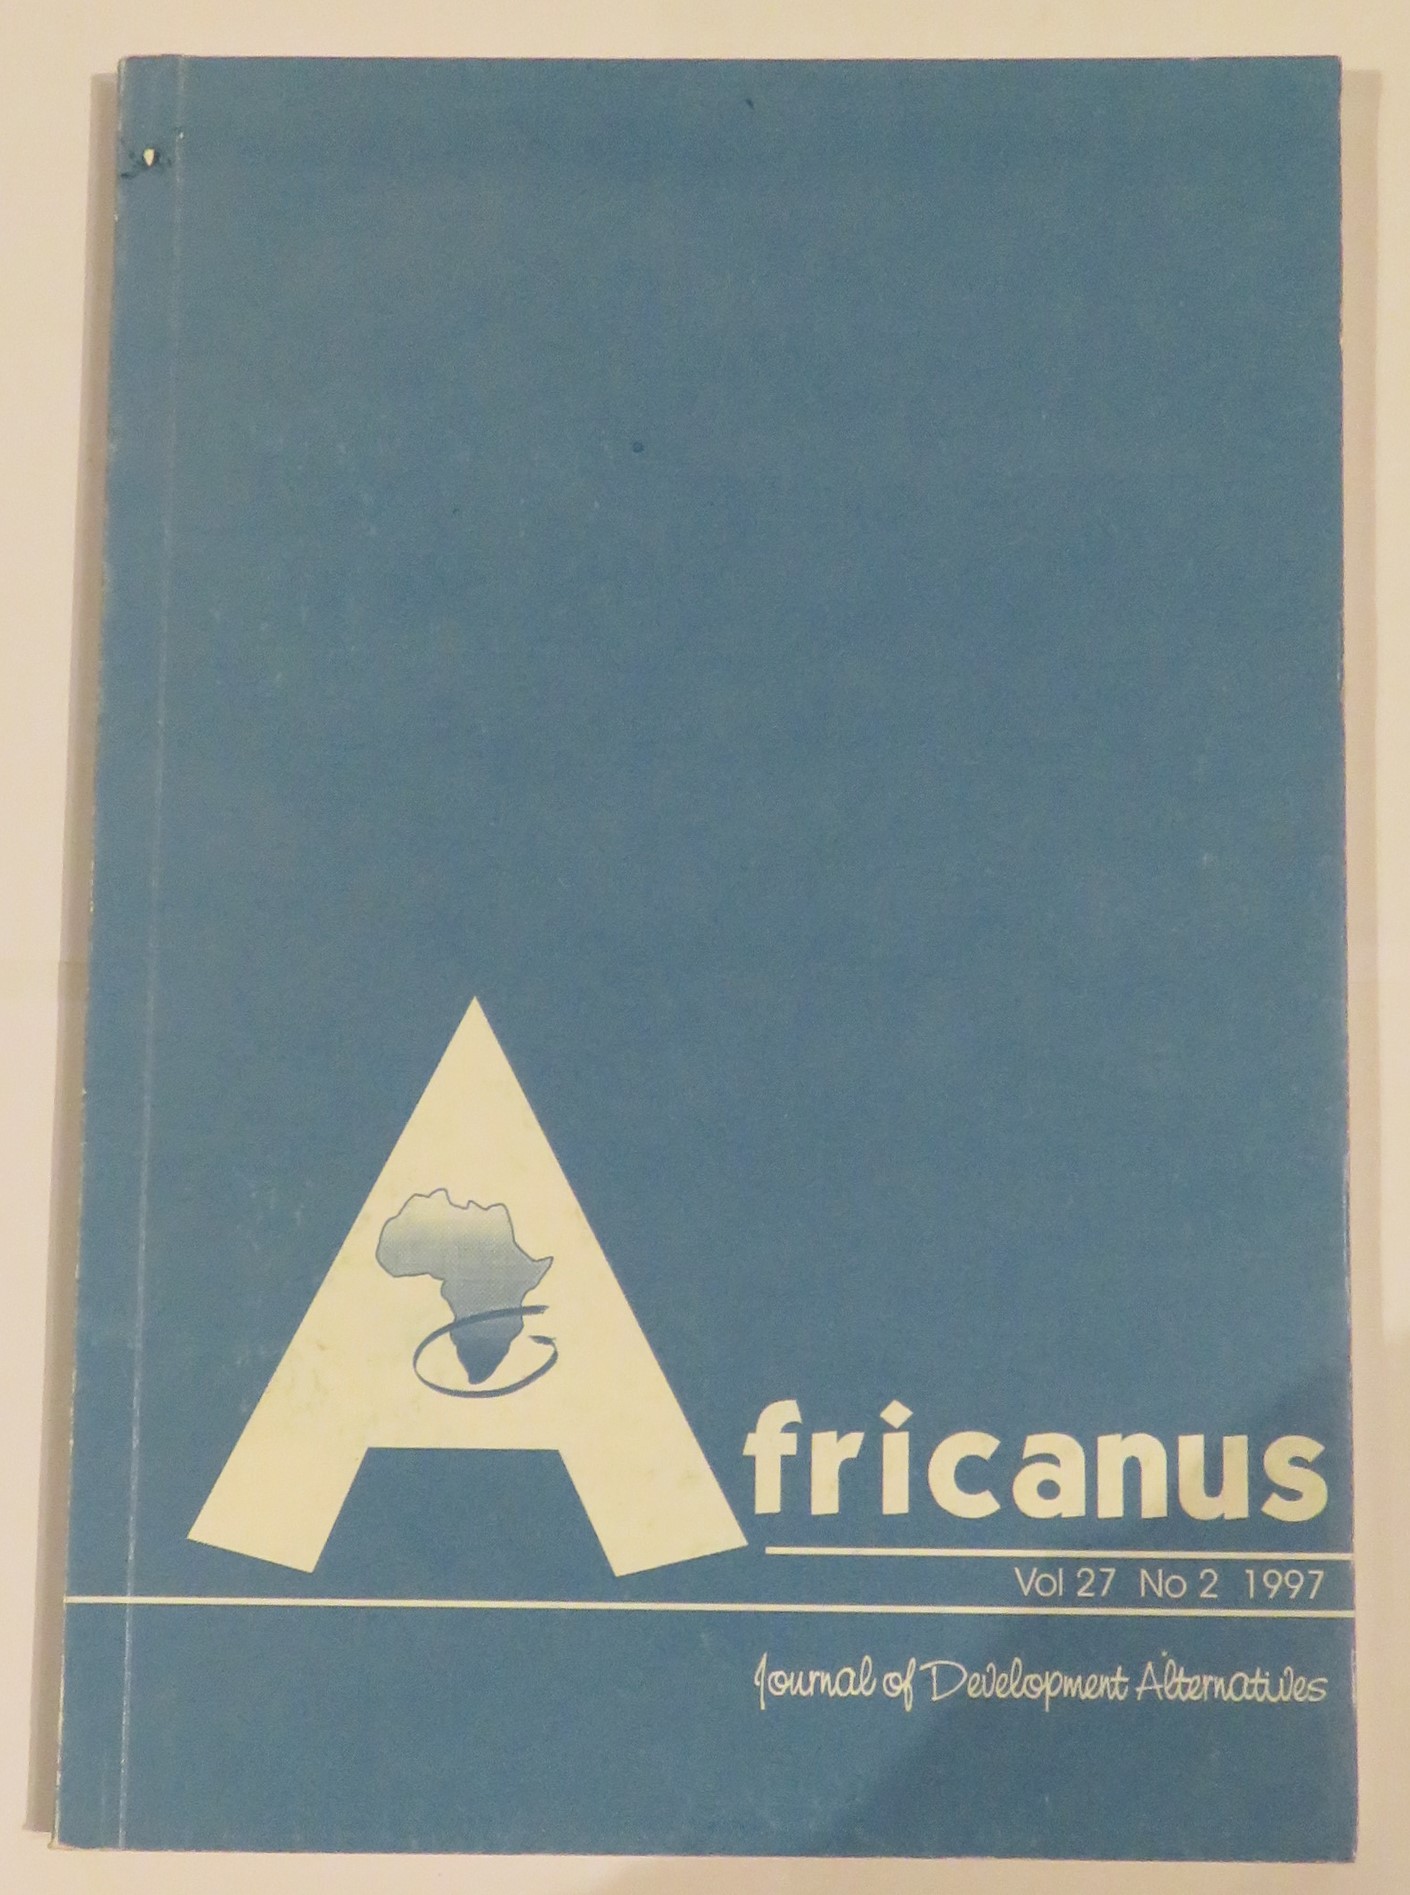 Africanus: Journal of Development Alternatives